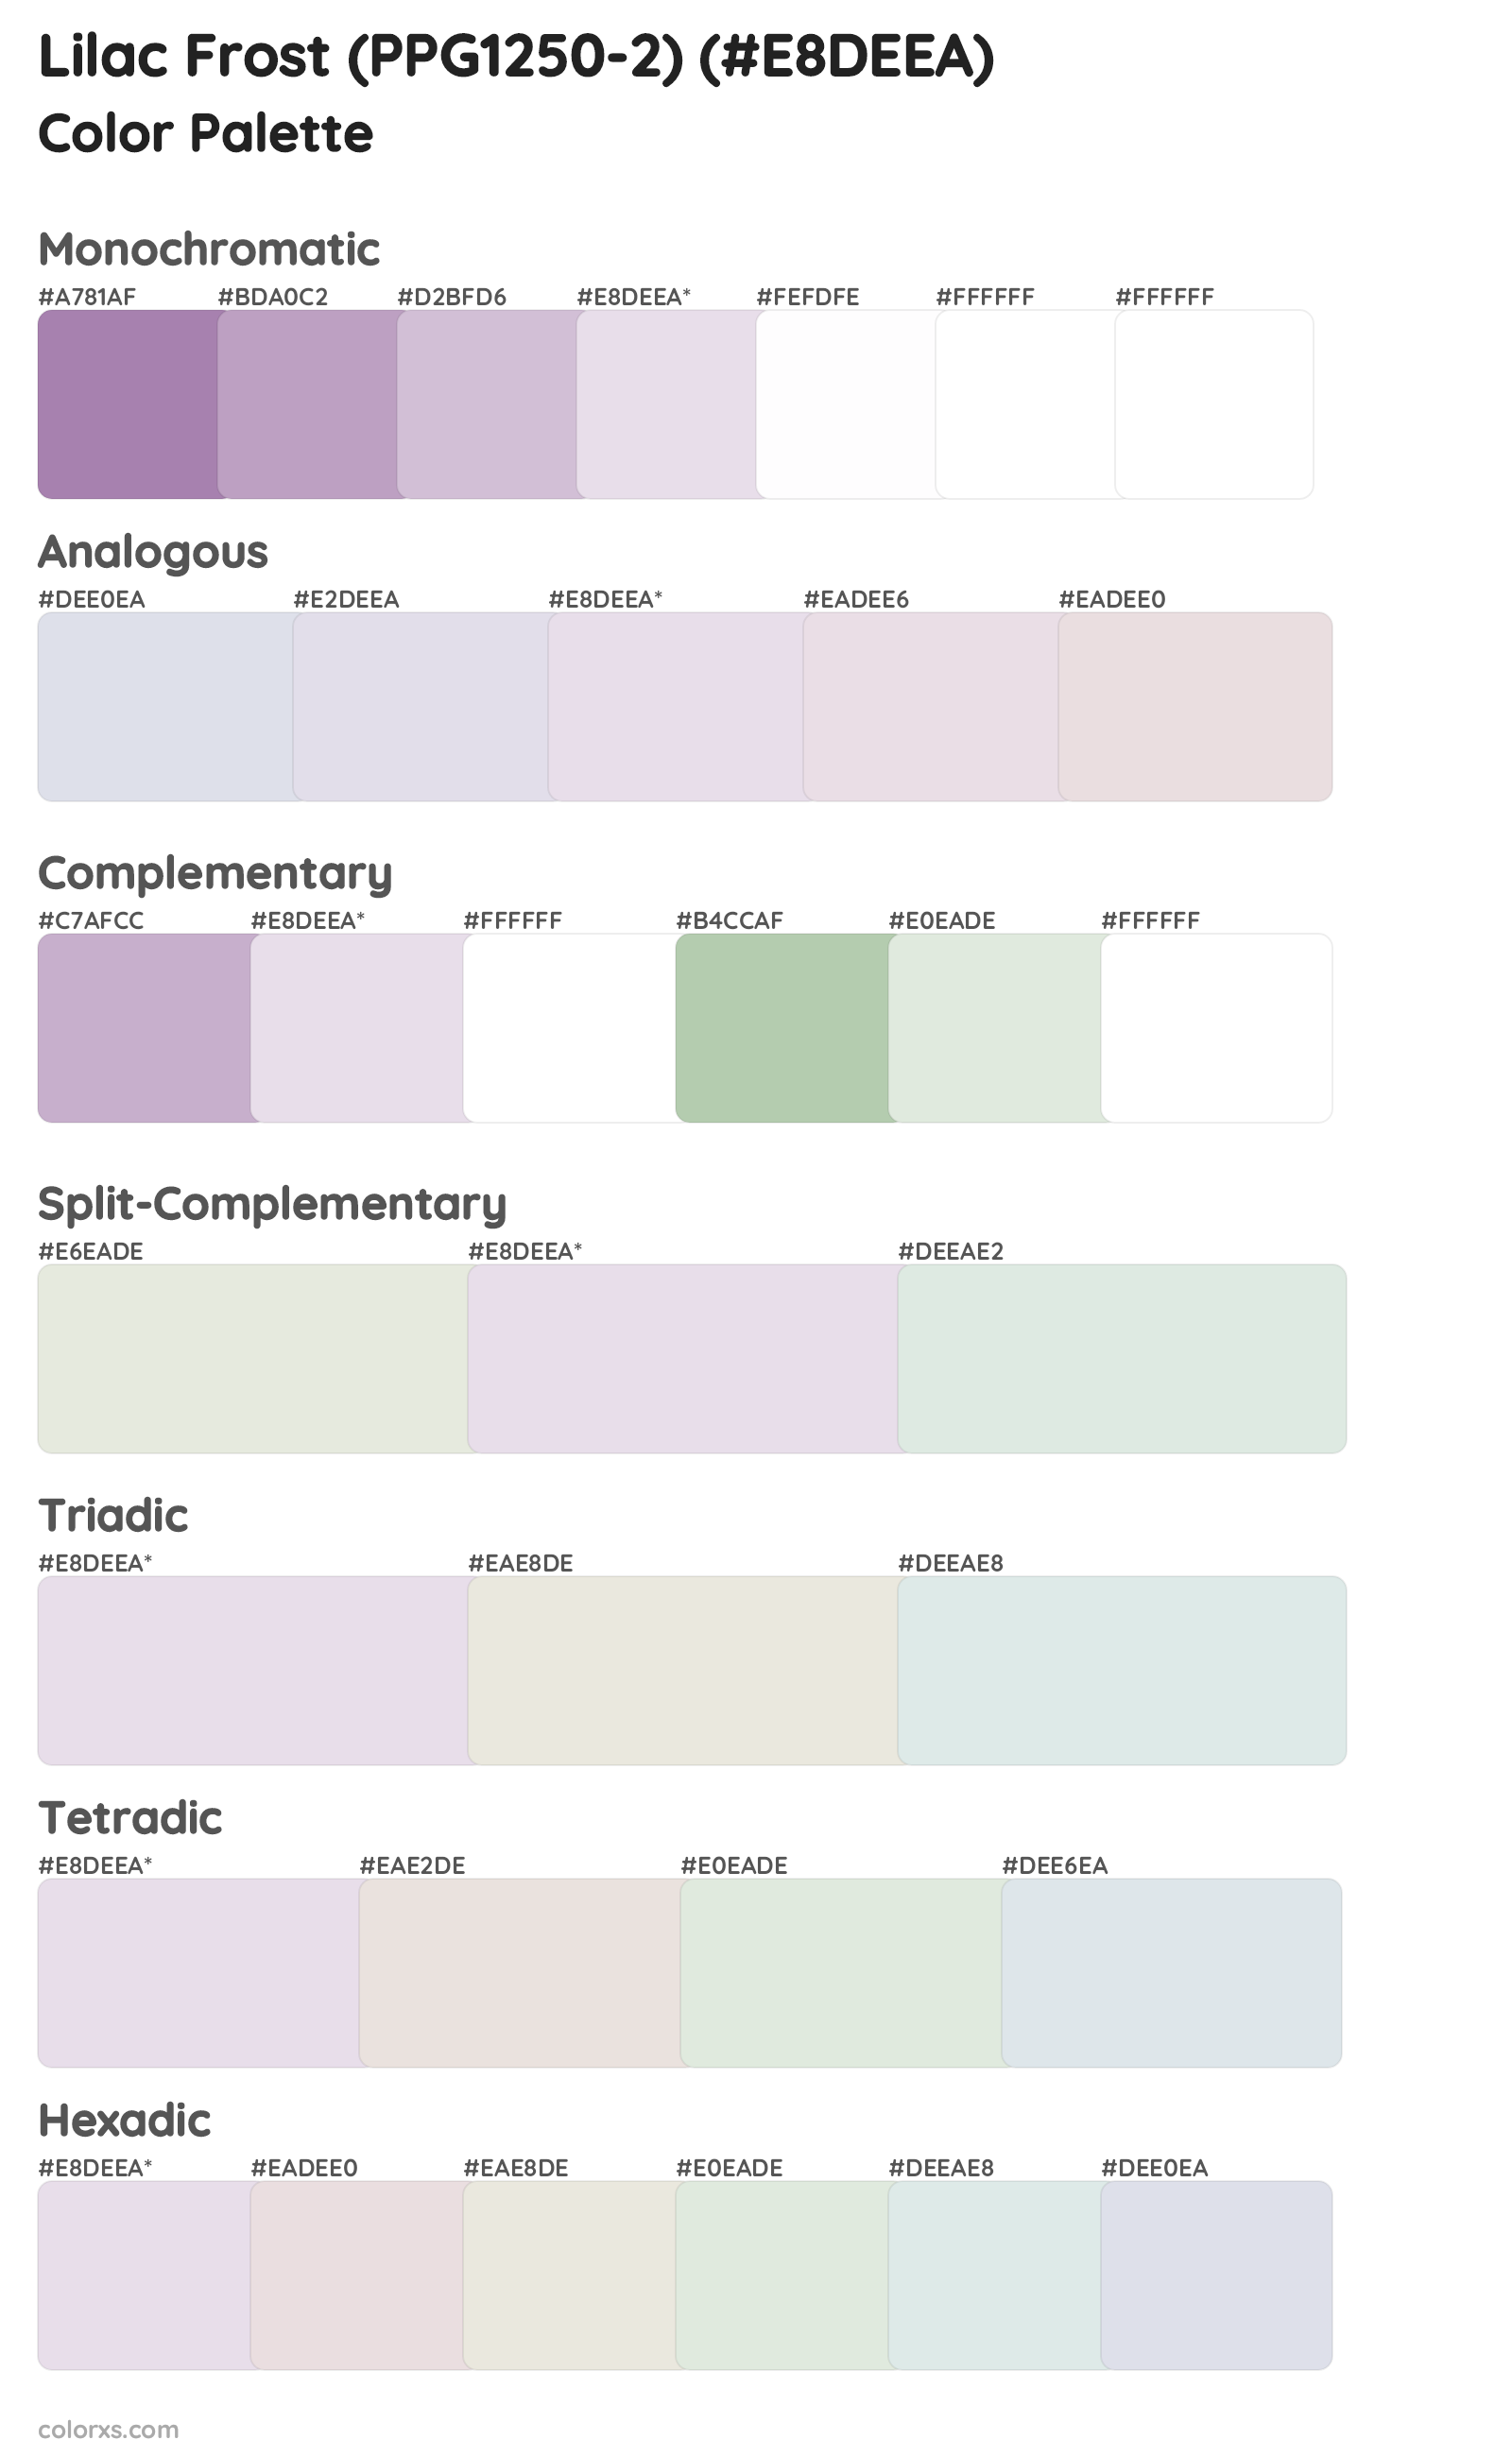 Lilac Frost (PPG1250-2) Color Scheme Palettes